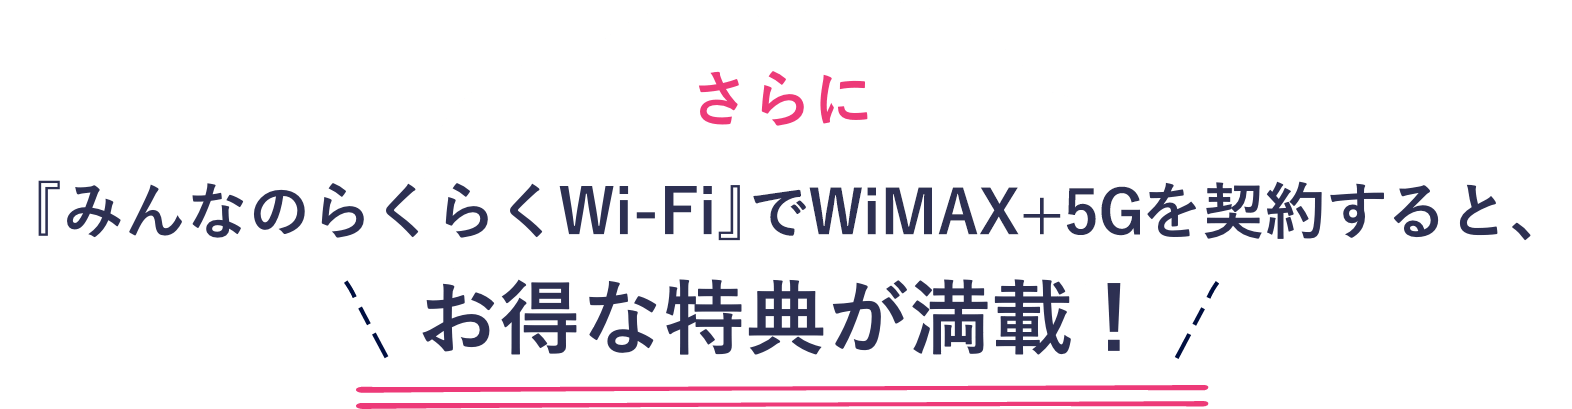 wimax5g ワイマックス WiMAX キャンペーン 安い 契約 申し込み 料金プラン